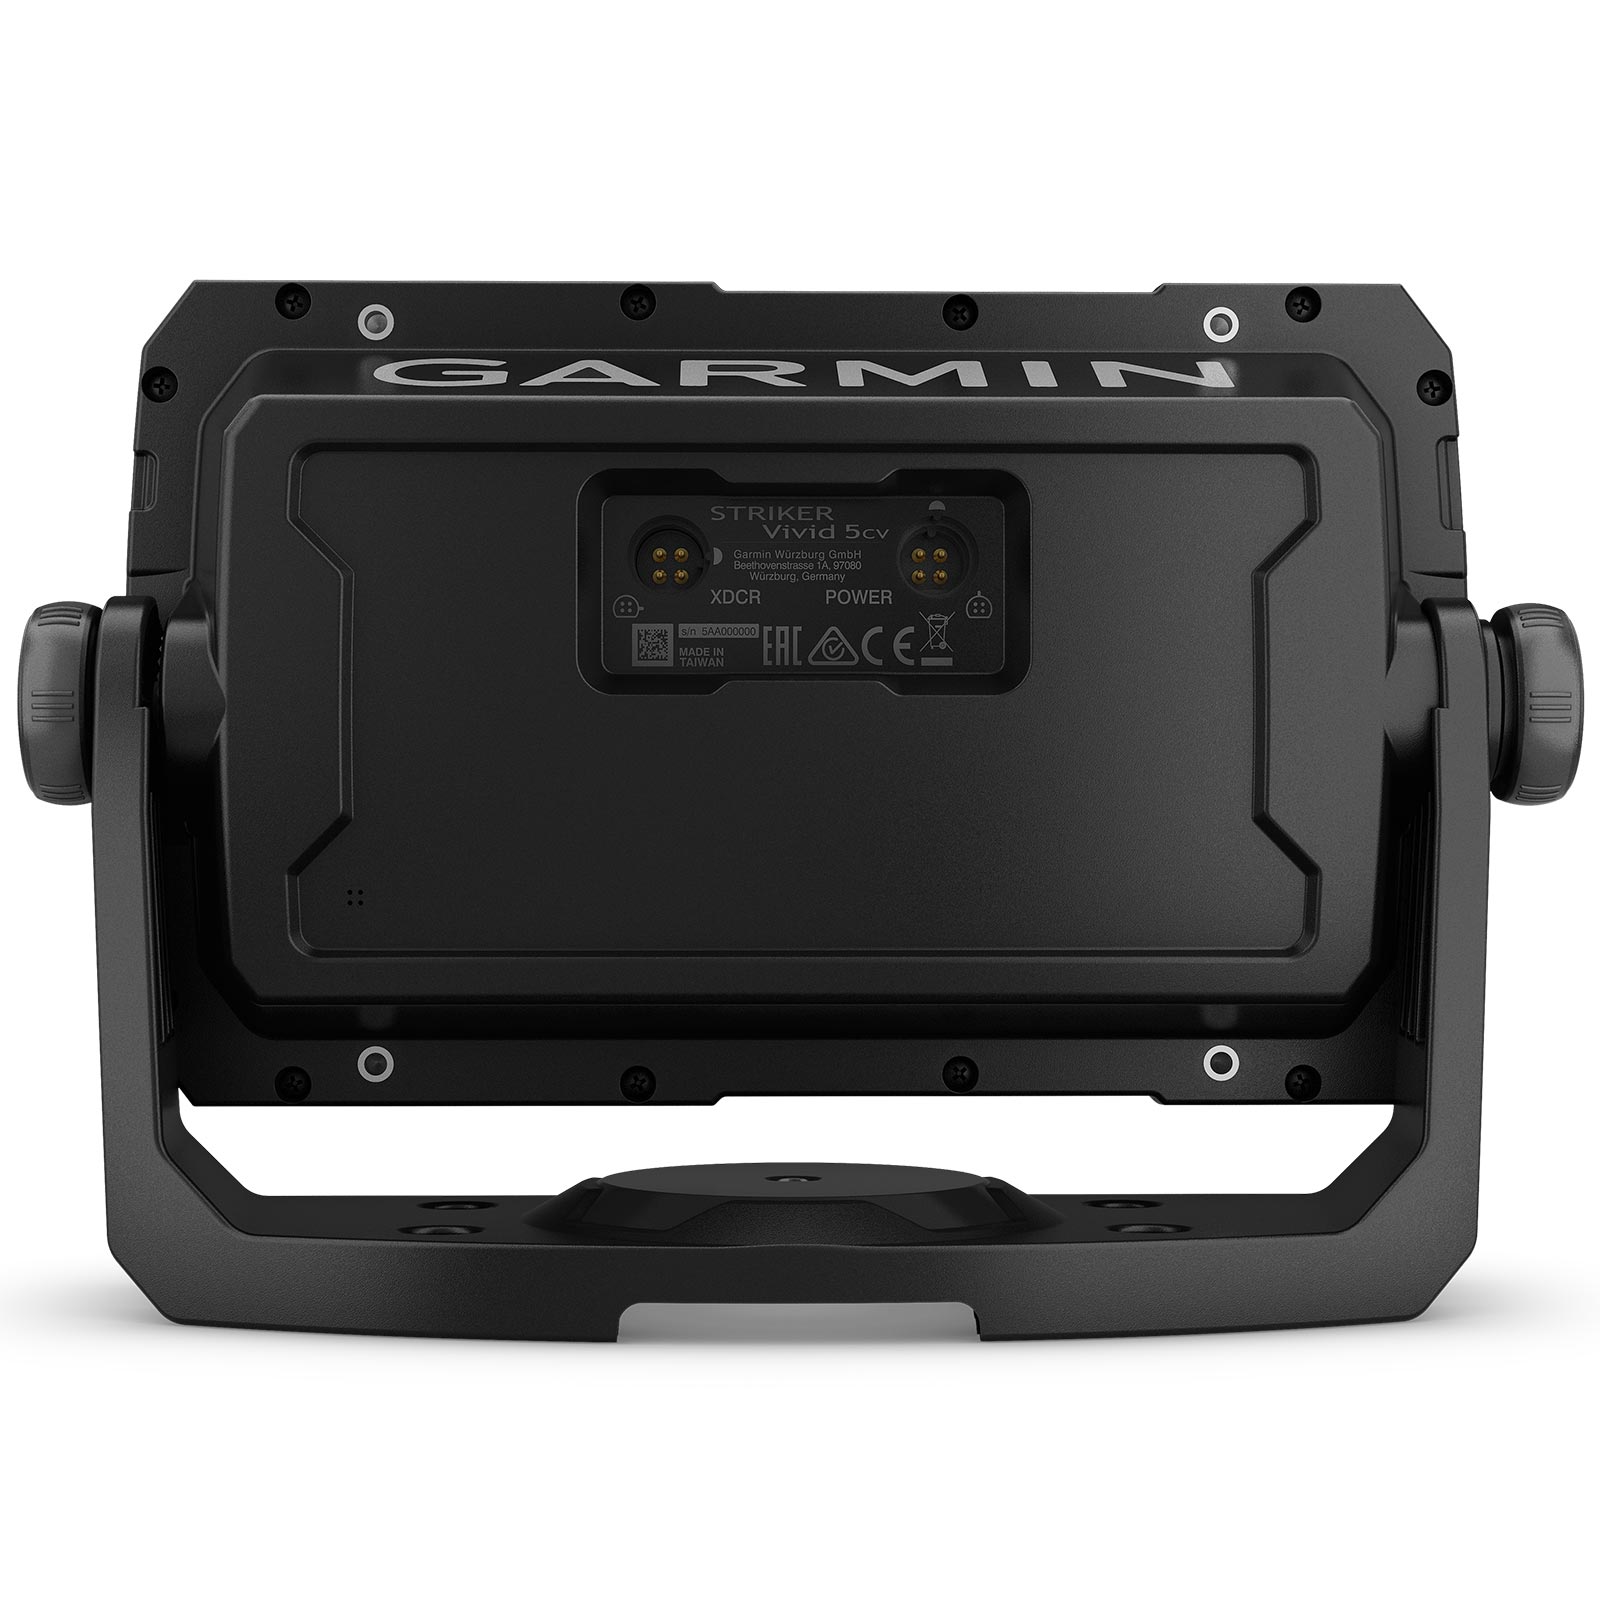 Garmin STRIKER Vivid 5cv with GT20-TM Transducer - FishUSA